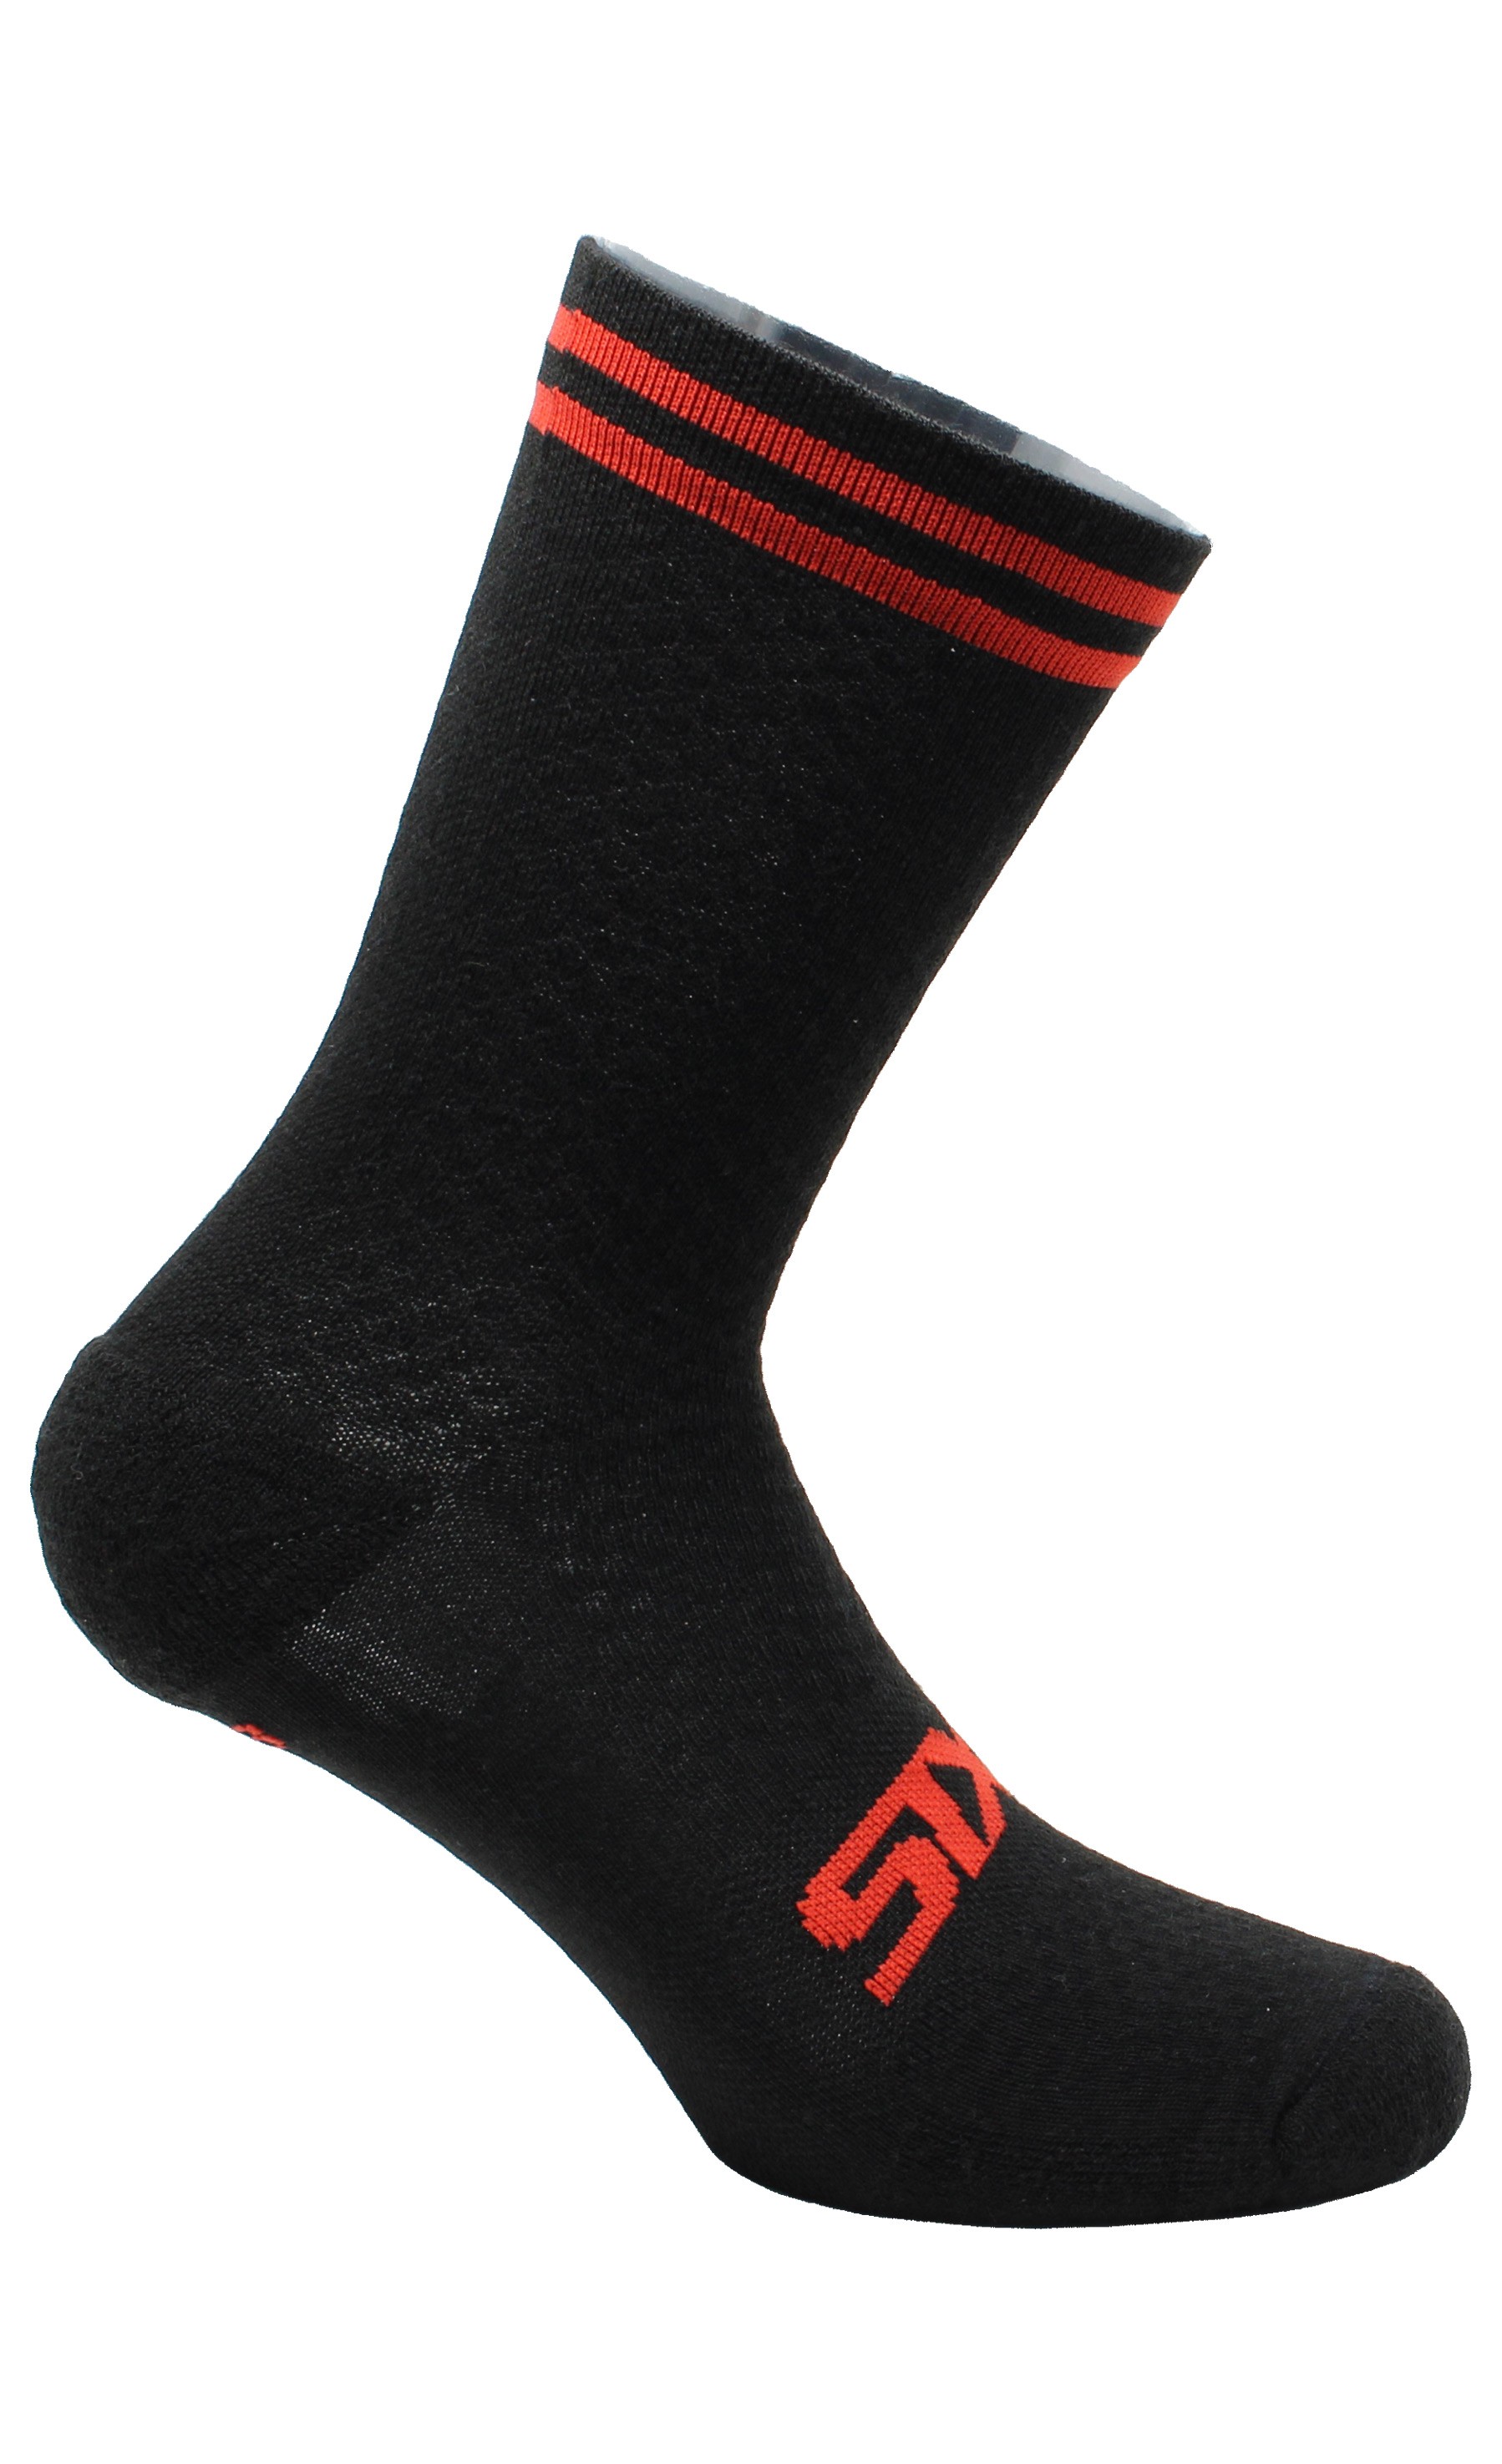 SIXS - MERINOS SOCKS - Short merino wool socks